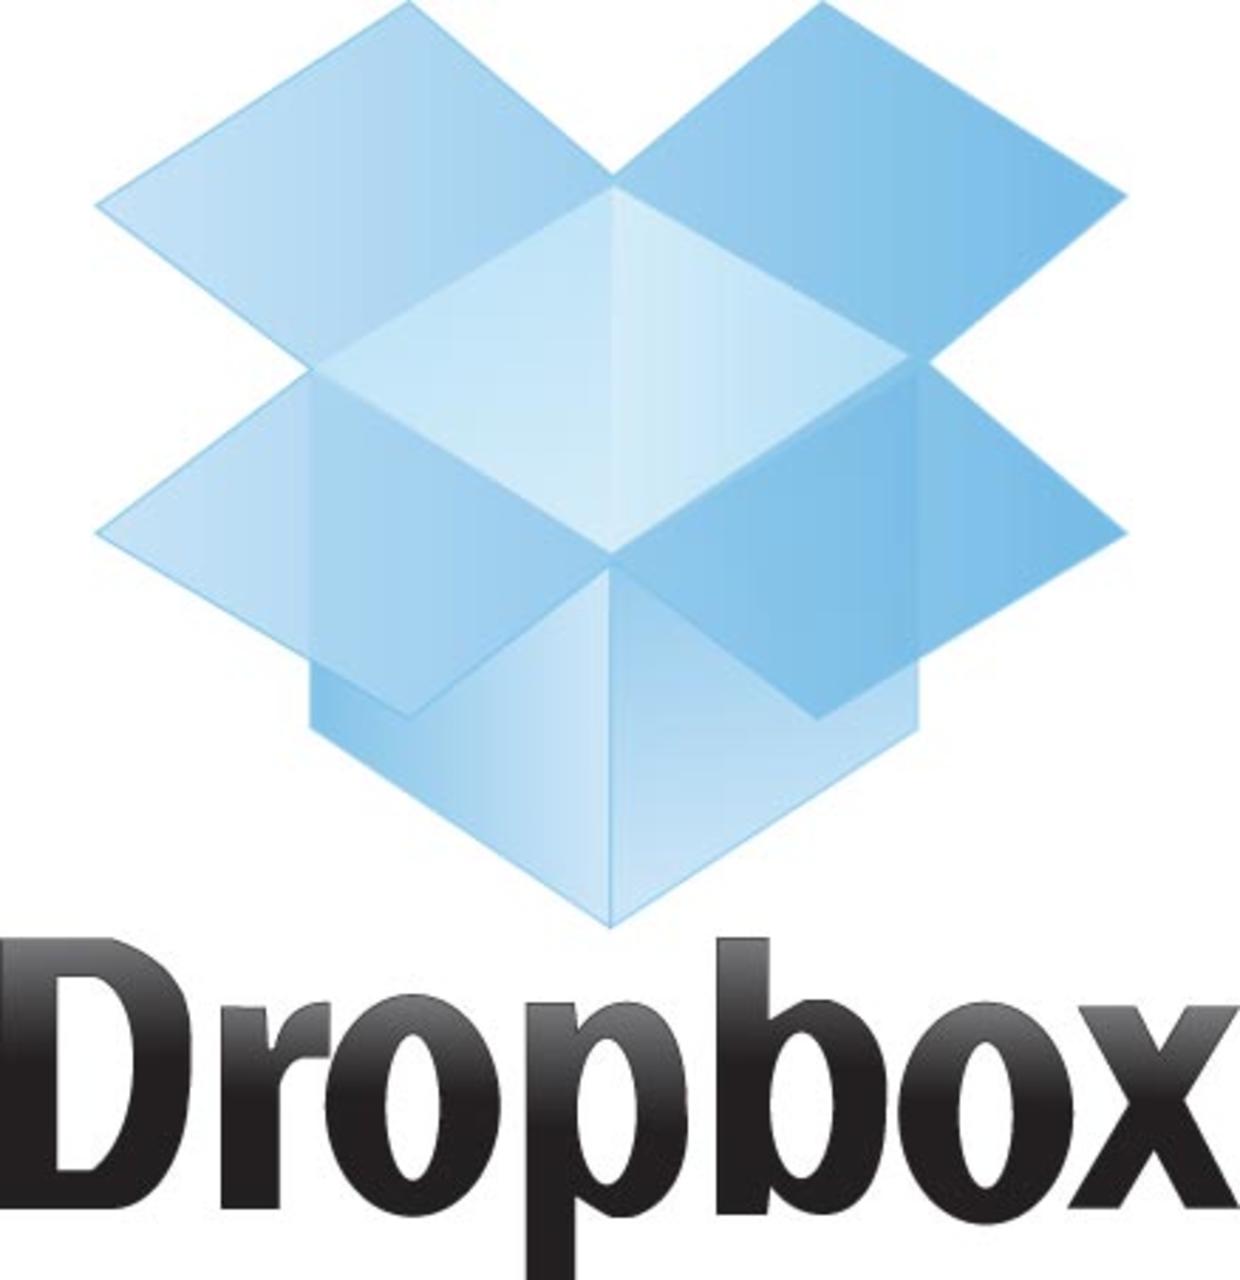 Dropbox 187.4.5691 instal the new